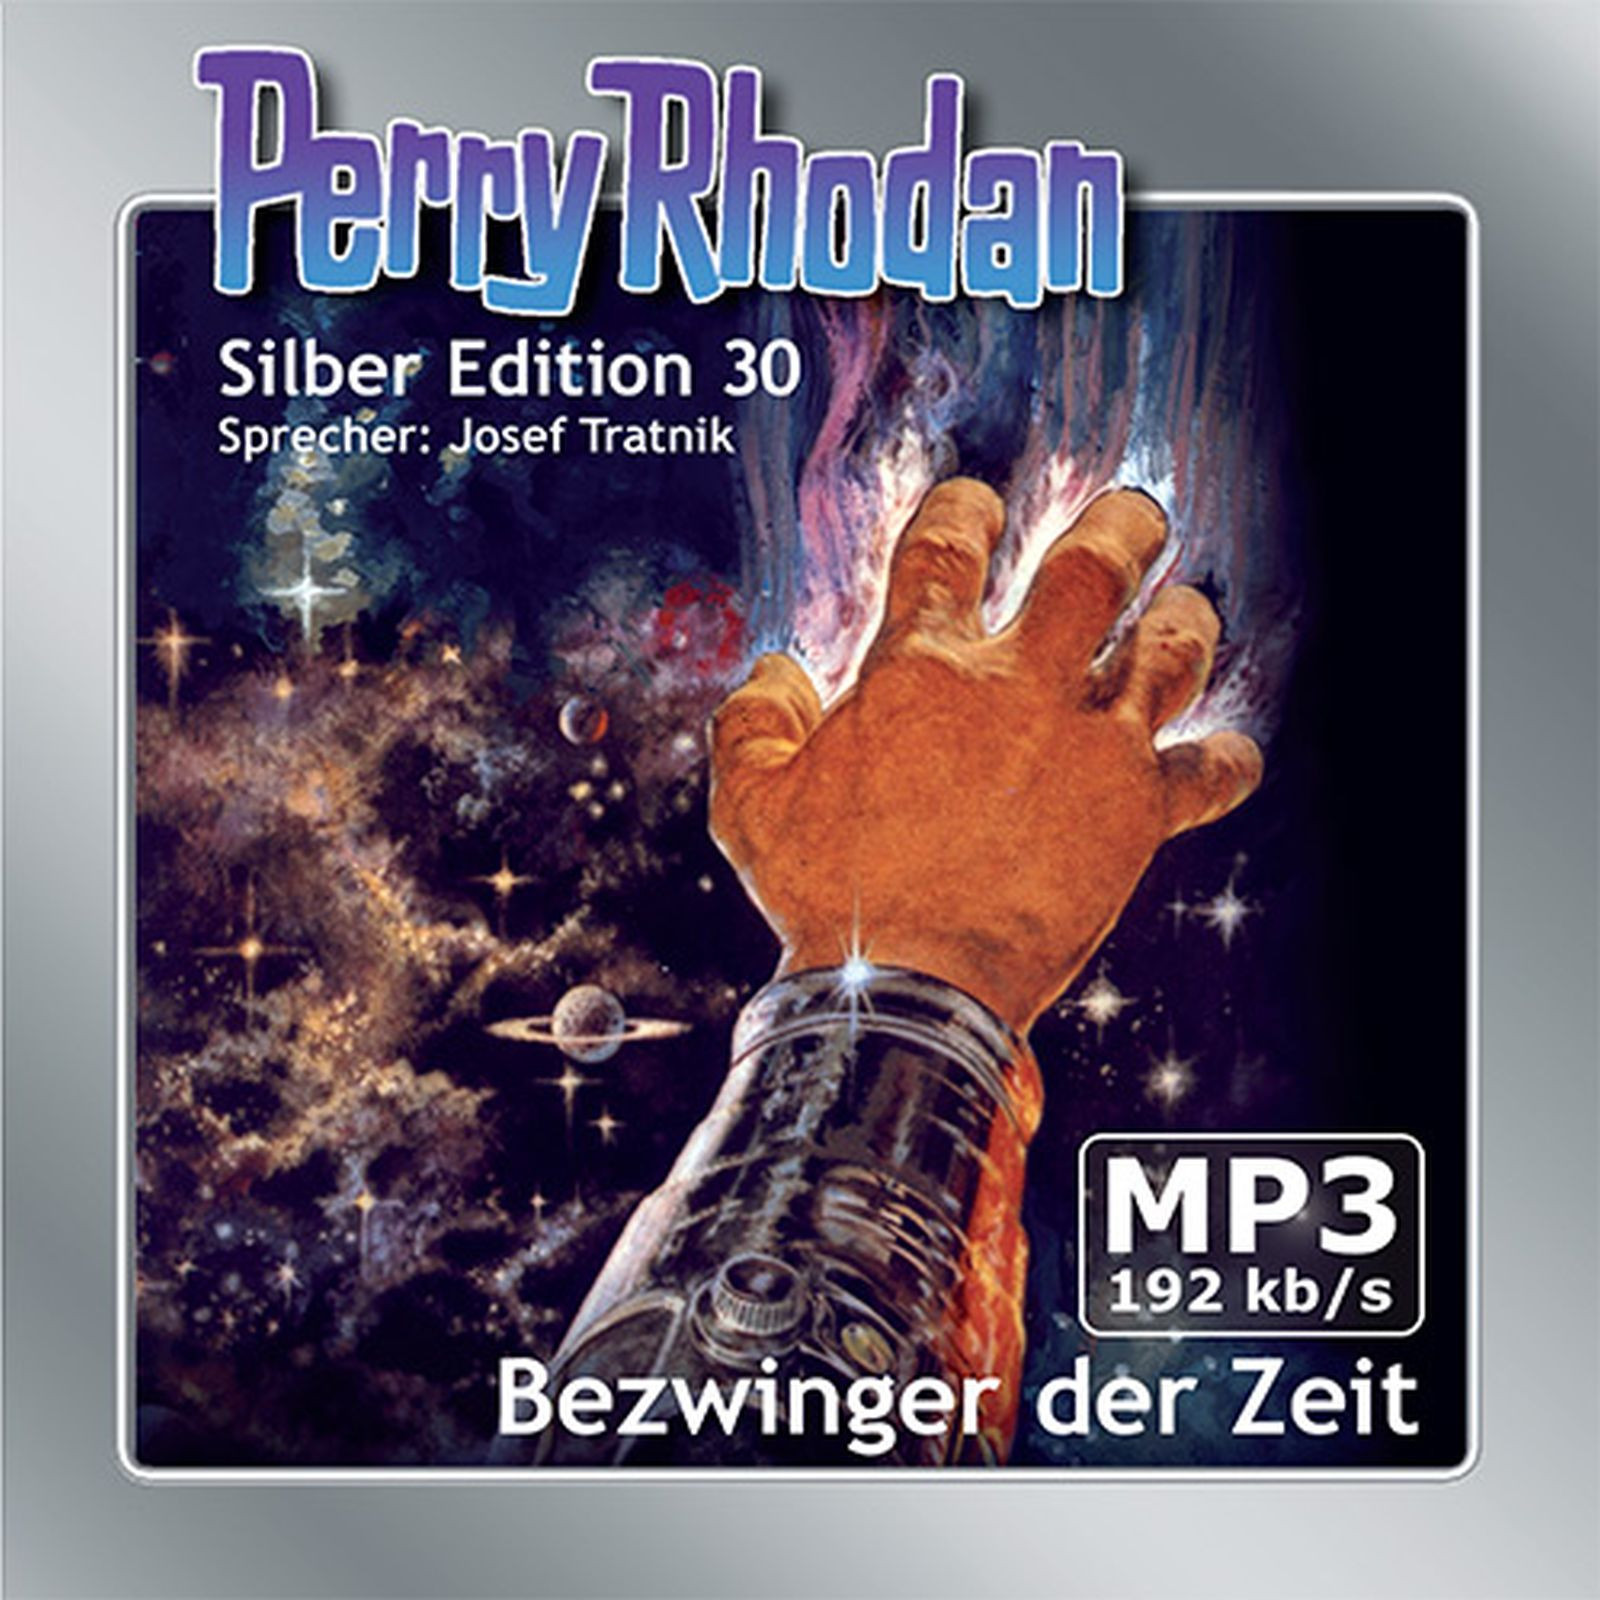 Perry Rhodan Silber Edition 30 Bezwinger der Zeit (2 MP3-CDs)